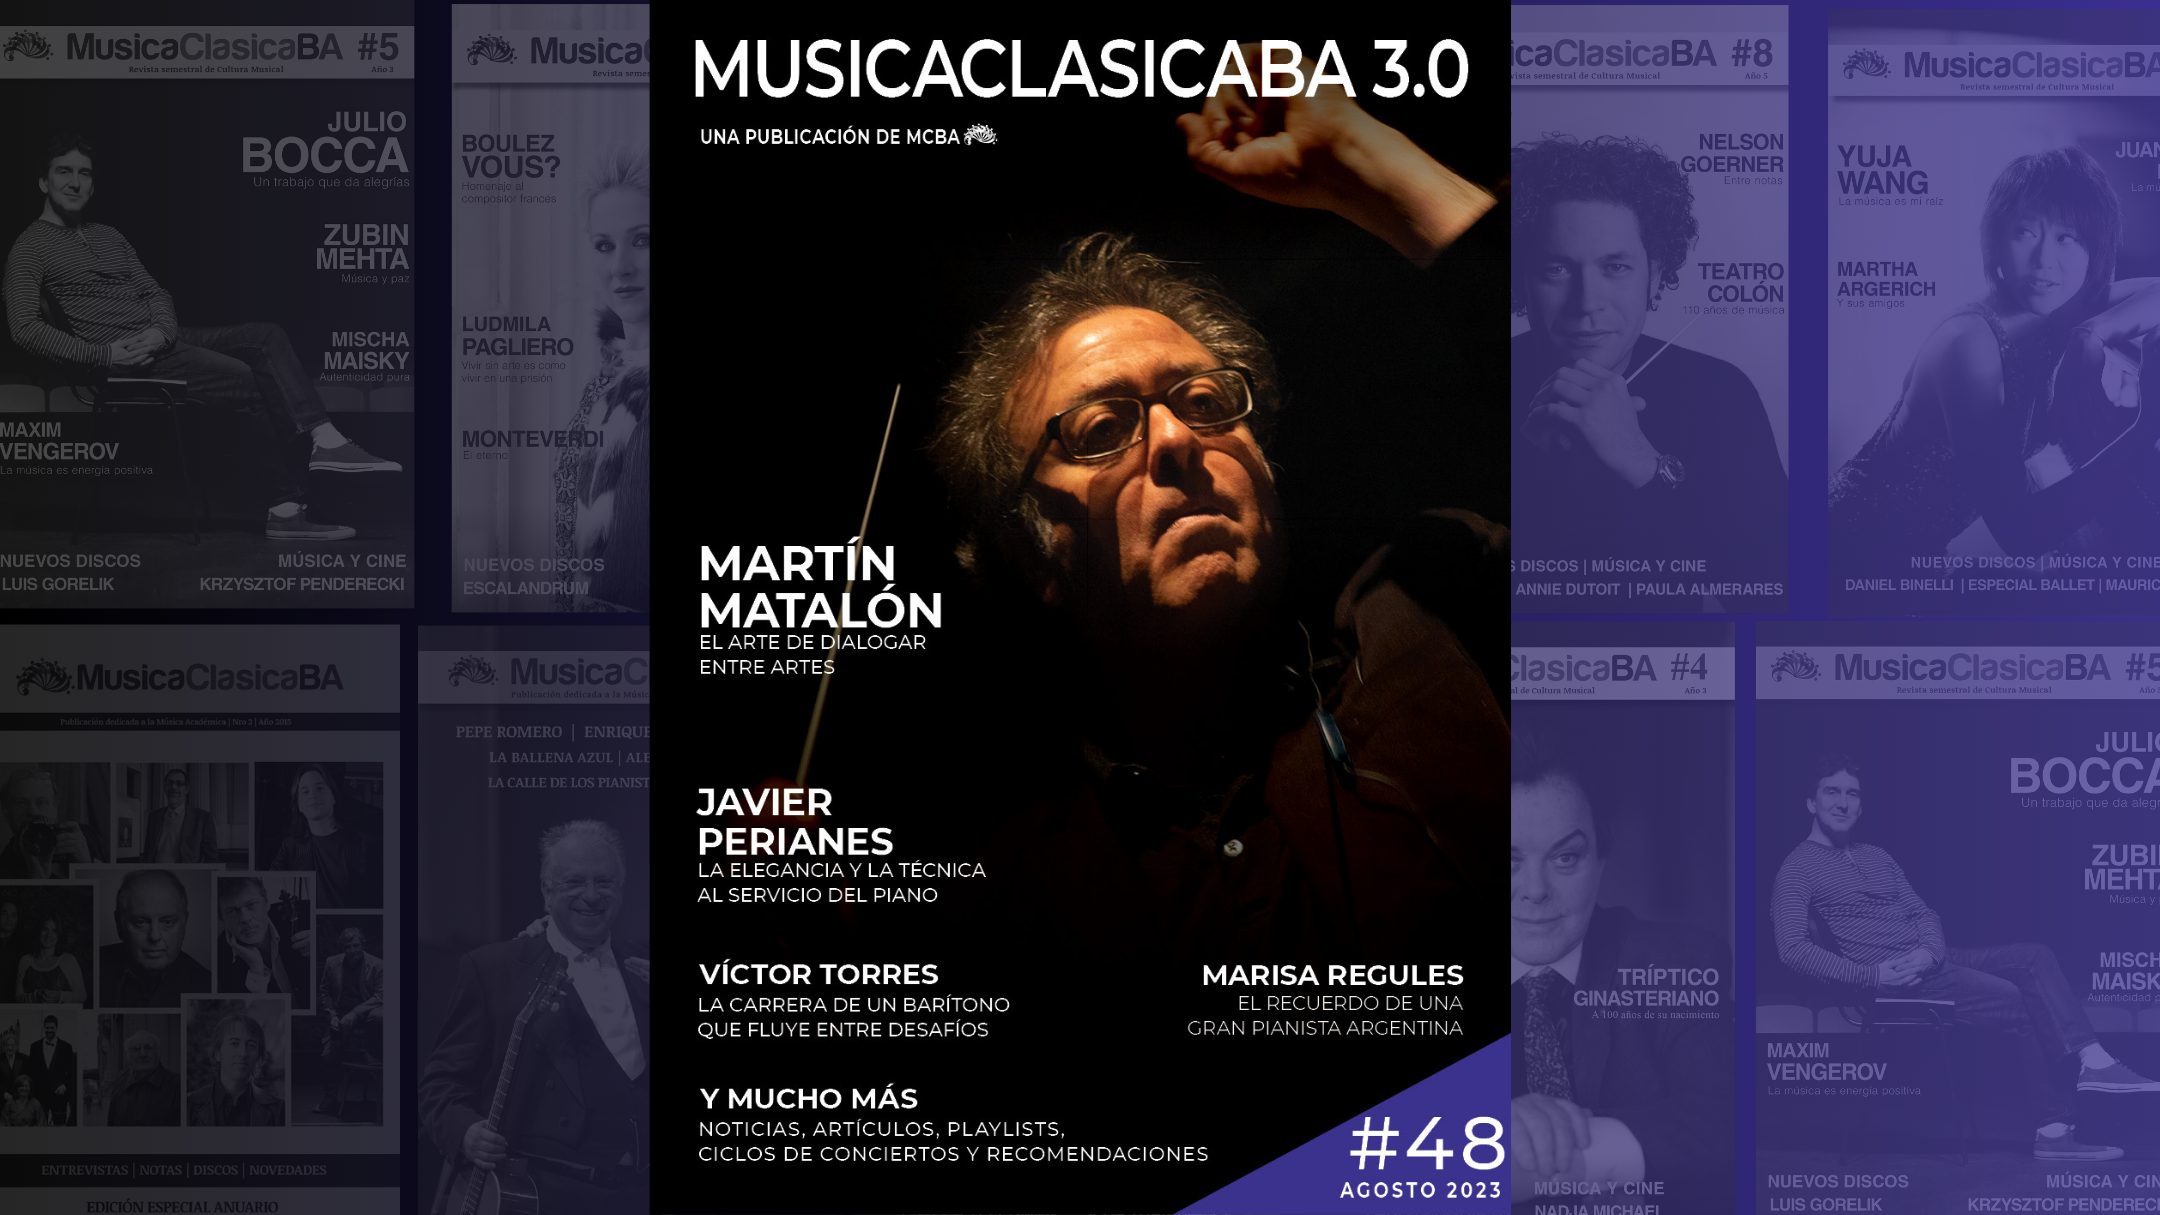 Nueva edición de la revista MusicaClasicaBA 3.0 – Agosto 2023